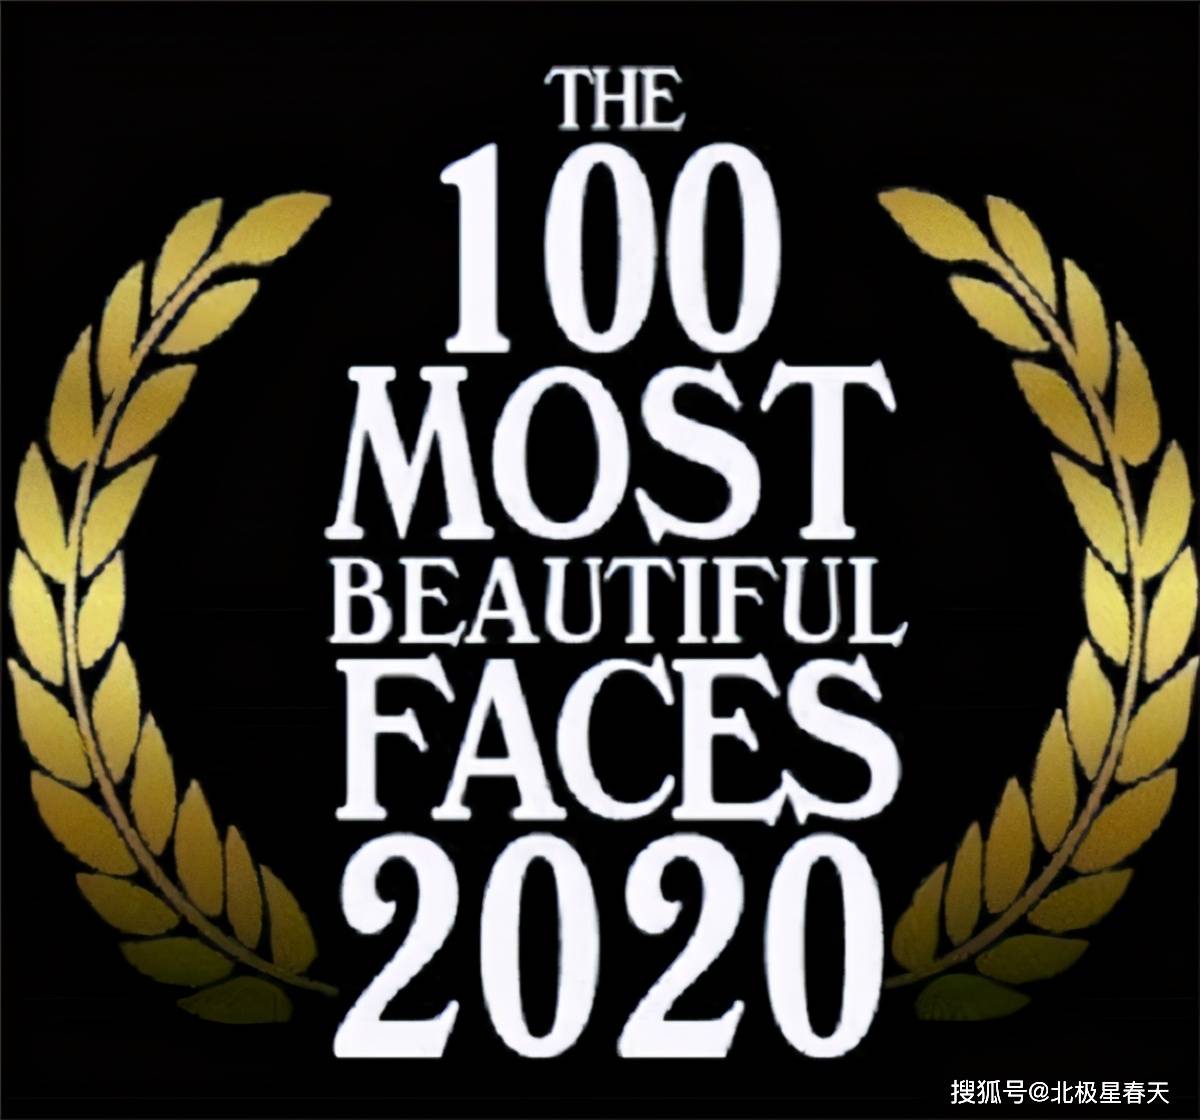 2020年全球最美臉蛋排行榜_2020全球最美臉蛋名單出爐,中國5人日本3人,第一名竟然是她!